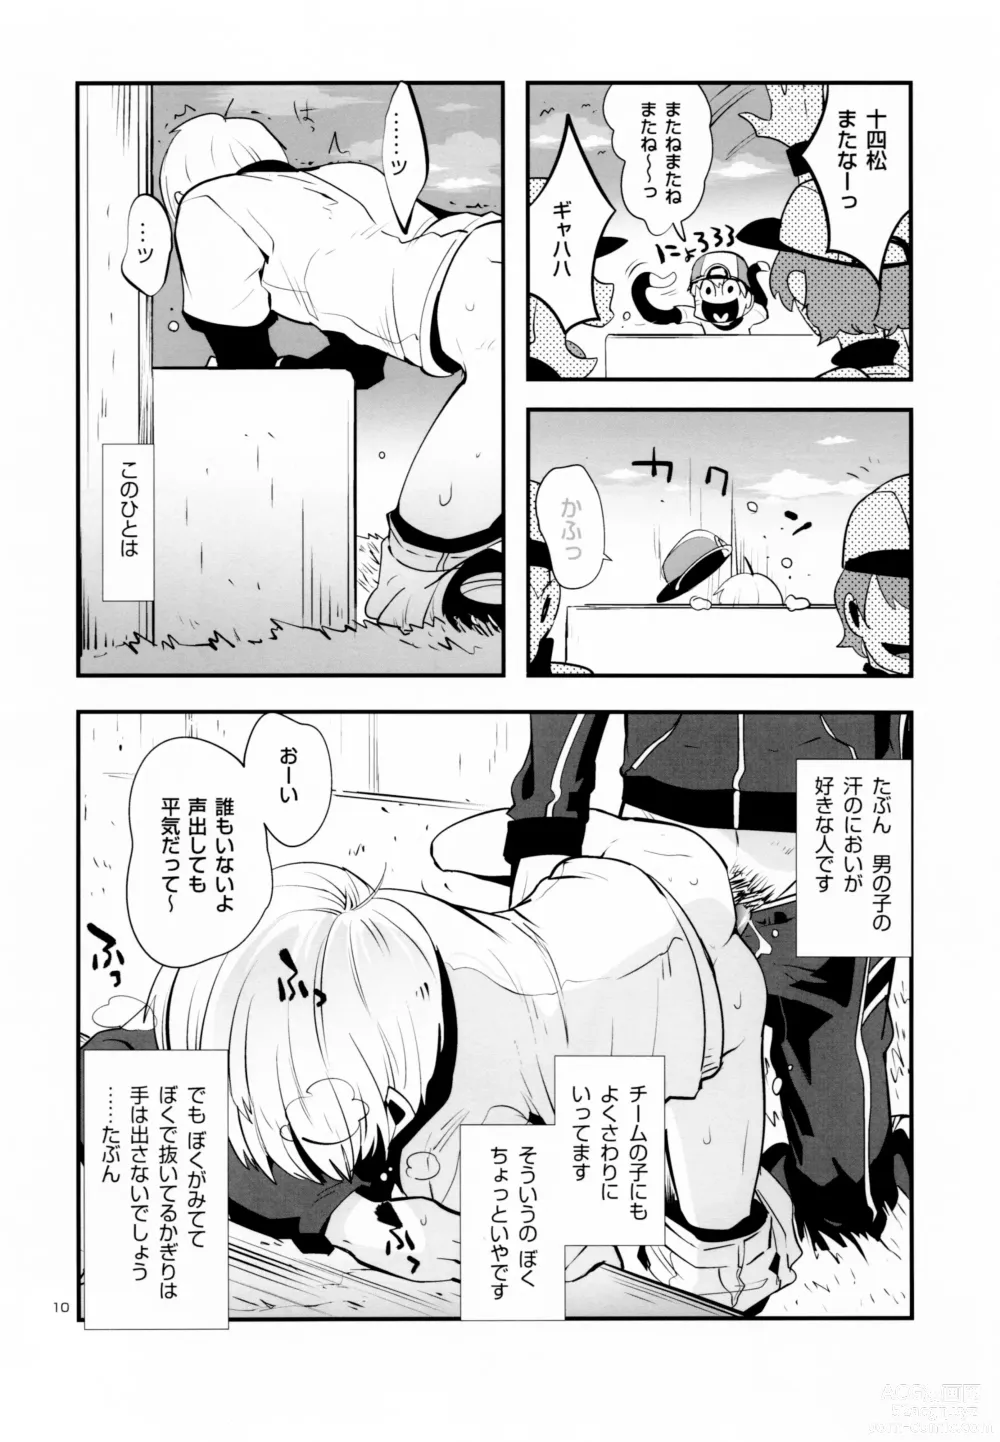 Page 13 of doujinshi Nikubenki no Juushimatsu-kun ni wa Taisetsuna Yume ga Arimasu